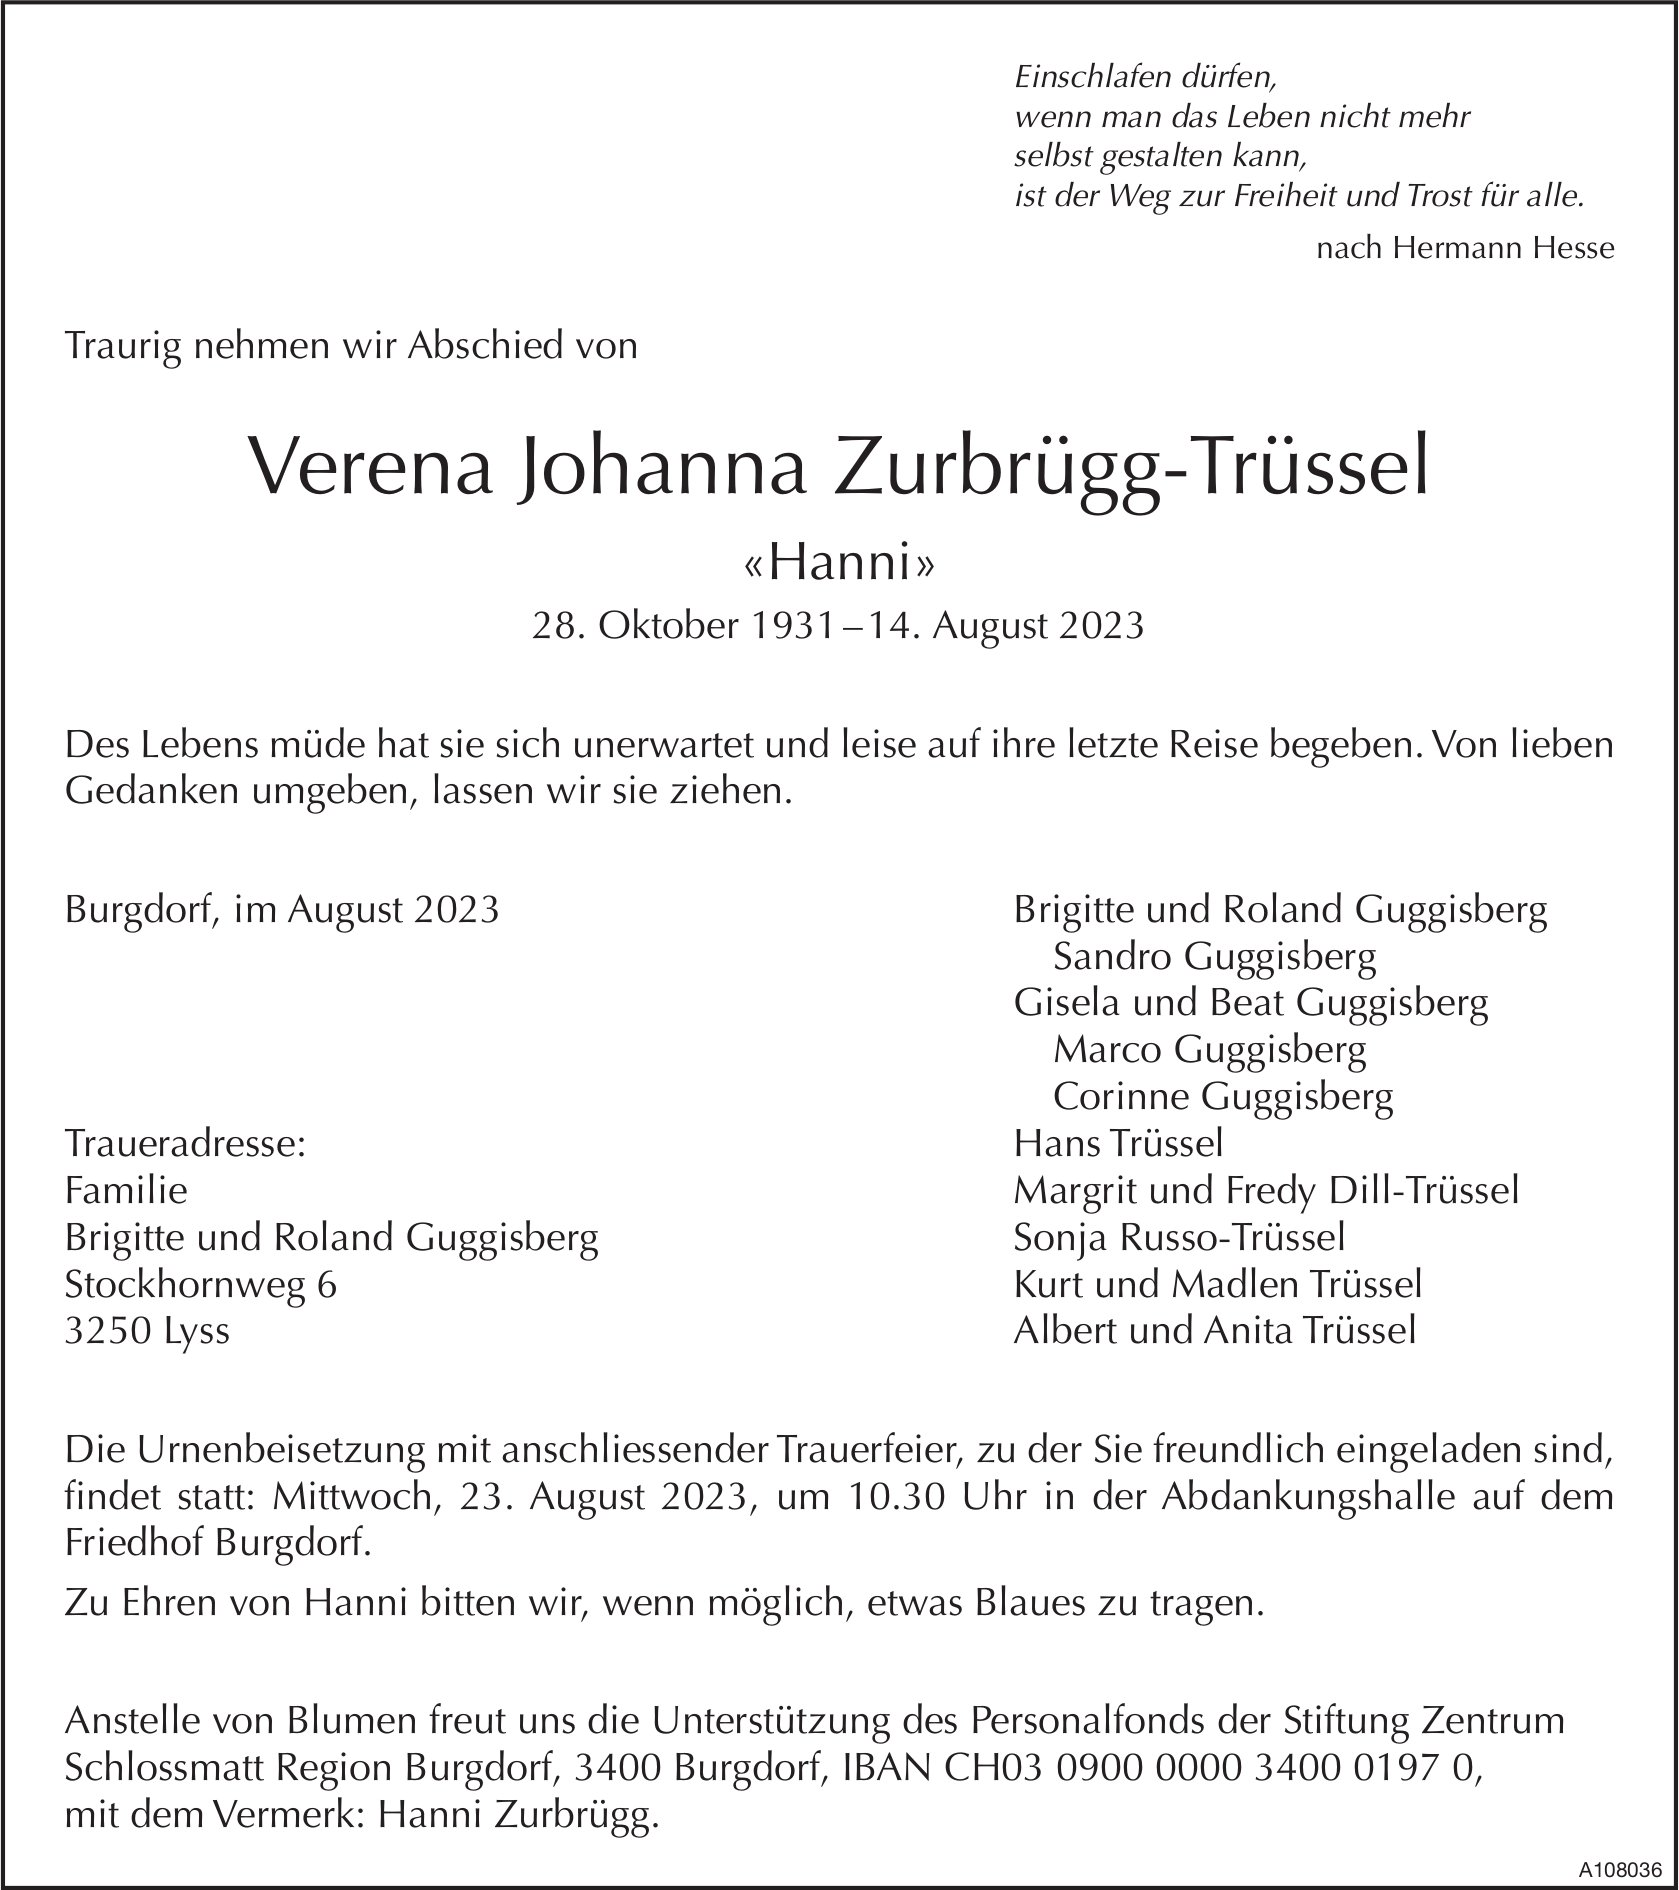 Verena Johanna Zurbrügg-Trüssel, August 2023 / TA